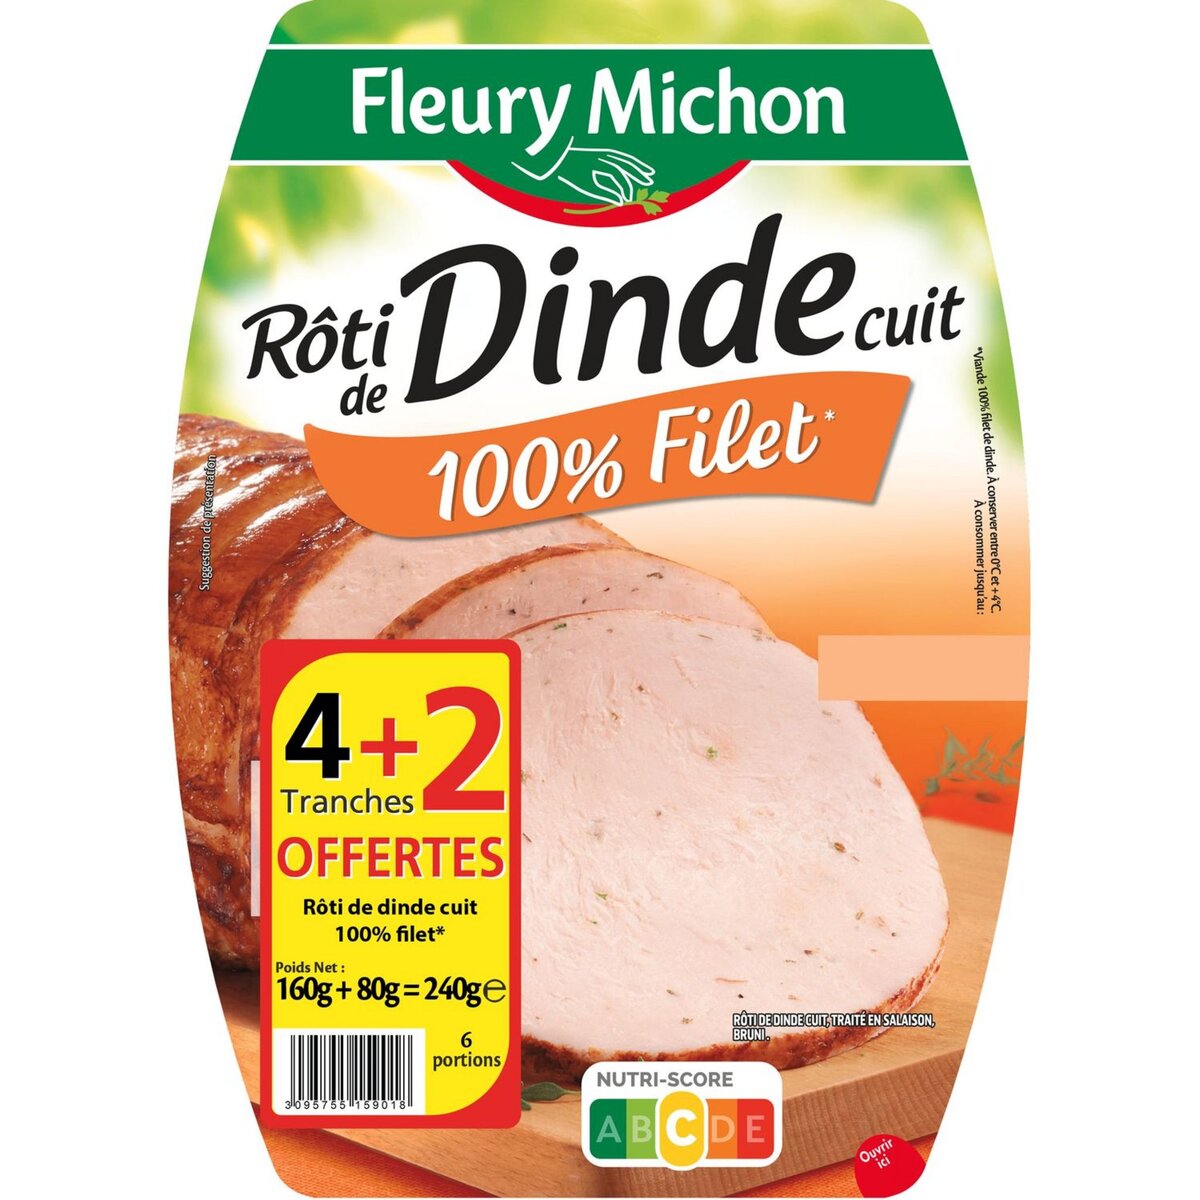 FLEURY MICHON Rôti de dinde cuit 100% filet 4 tranches +2 offertes 240g